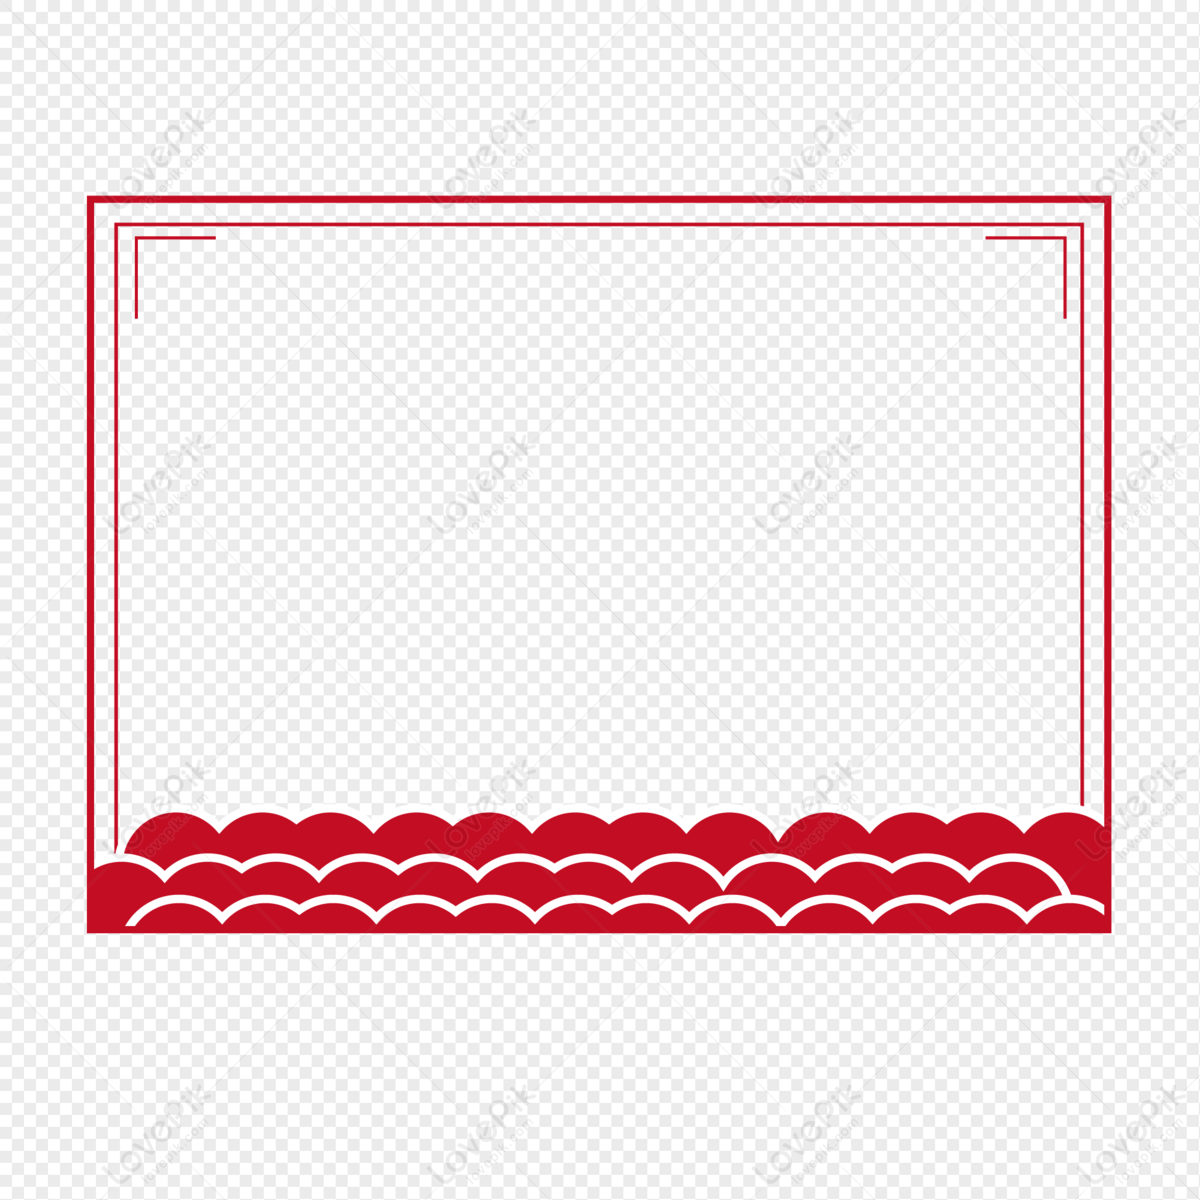 Bạn yêu thích biển và ngắm nhìn những con sóng đầy uyển chuyển? Hãy đến với vector sóng biển đỏ, có biên giới rõ ràng và sắc màu nổi bật. Hình ảnh PNG miễn phí và sẽ là món quà tuyệt vời cho bạn!